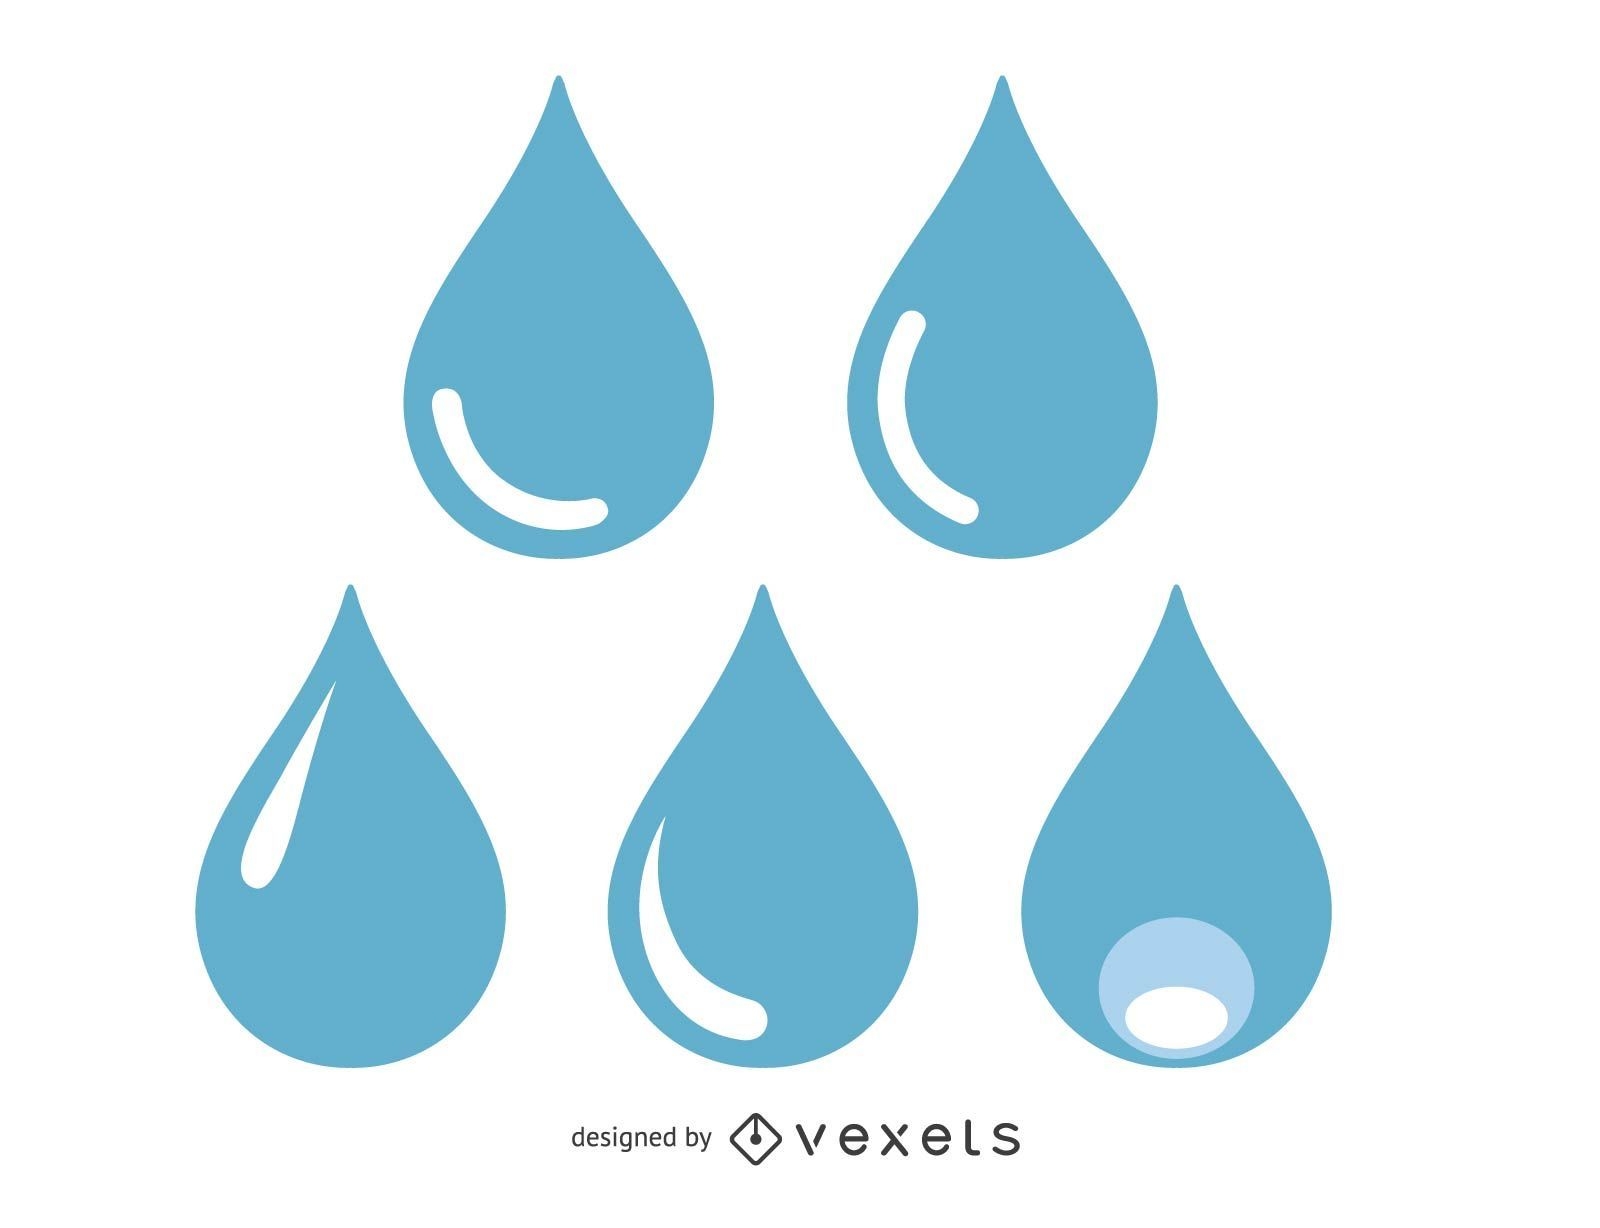 Desenho de Guarda-chuva com emoji de gotas de chuva para colorir